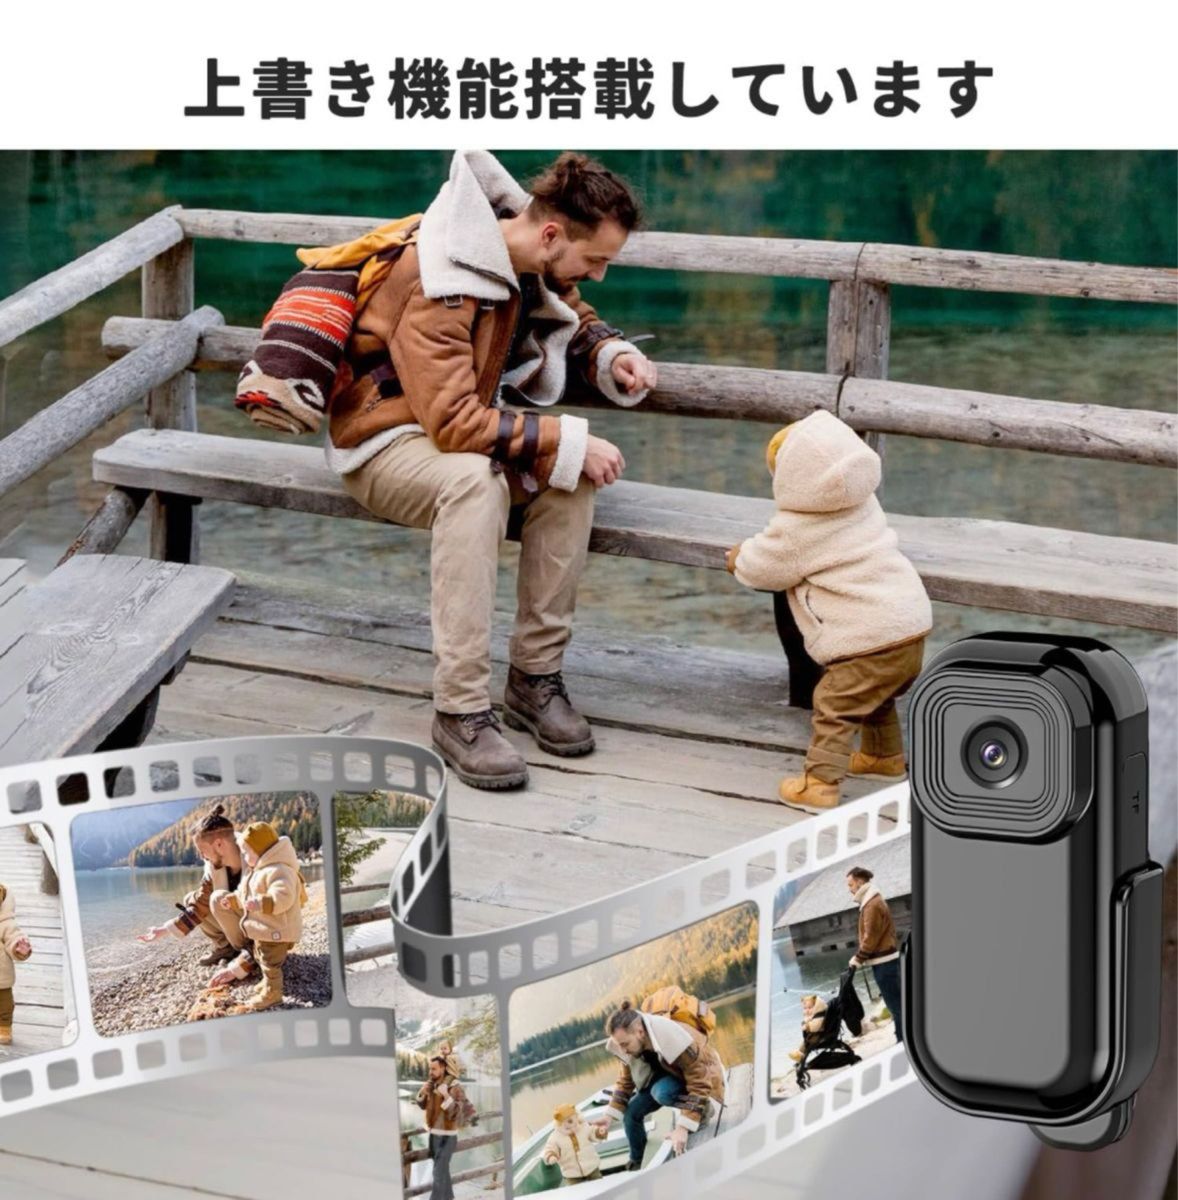 カメラ1080P 小型ボデイーカメラ 小型ビデオカメラ 0.96インチモニター付き 充電式 防犯カメラ